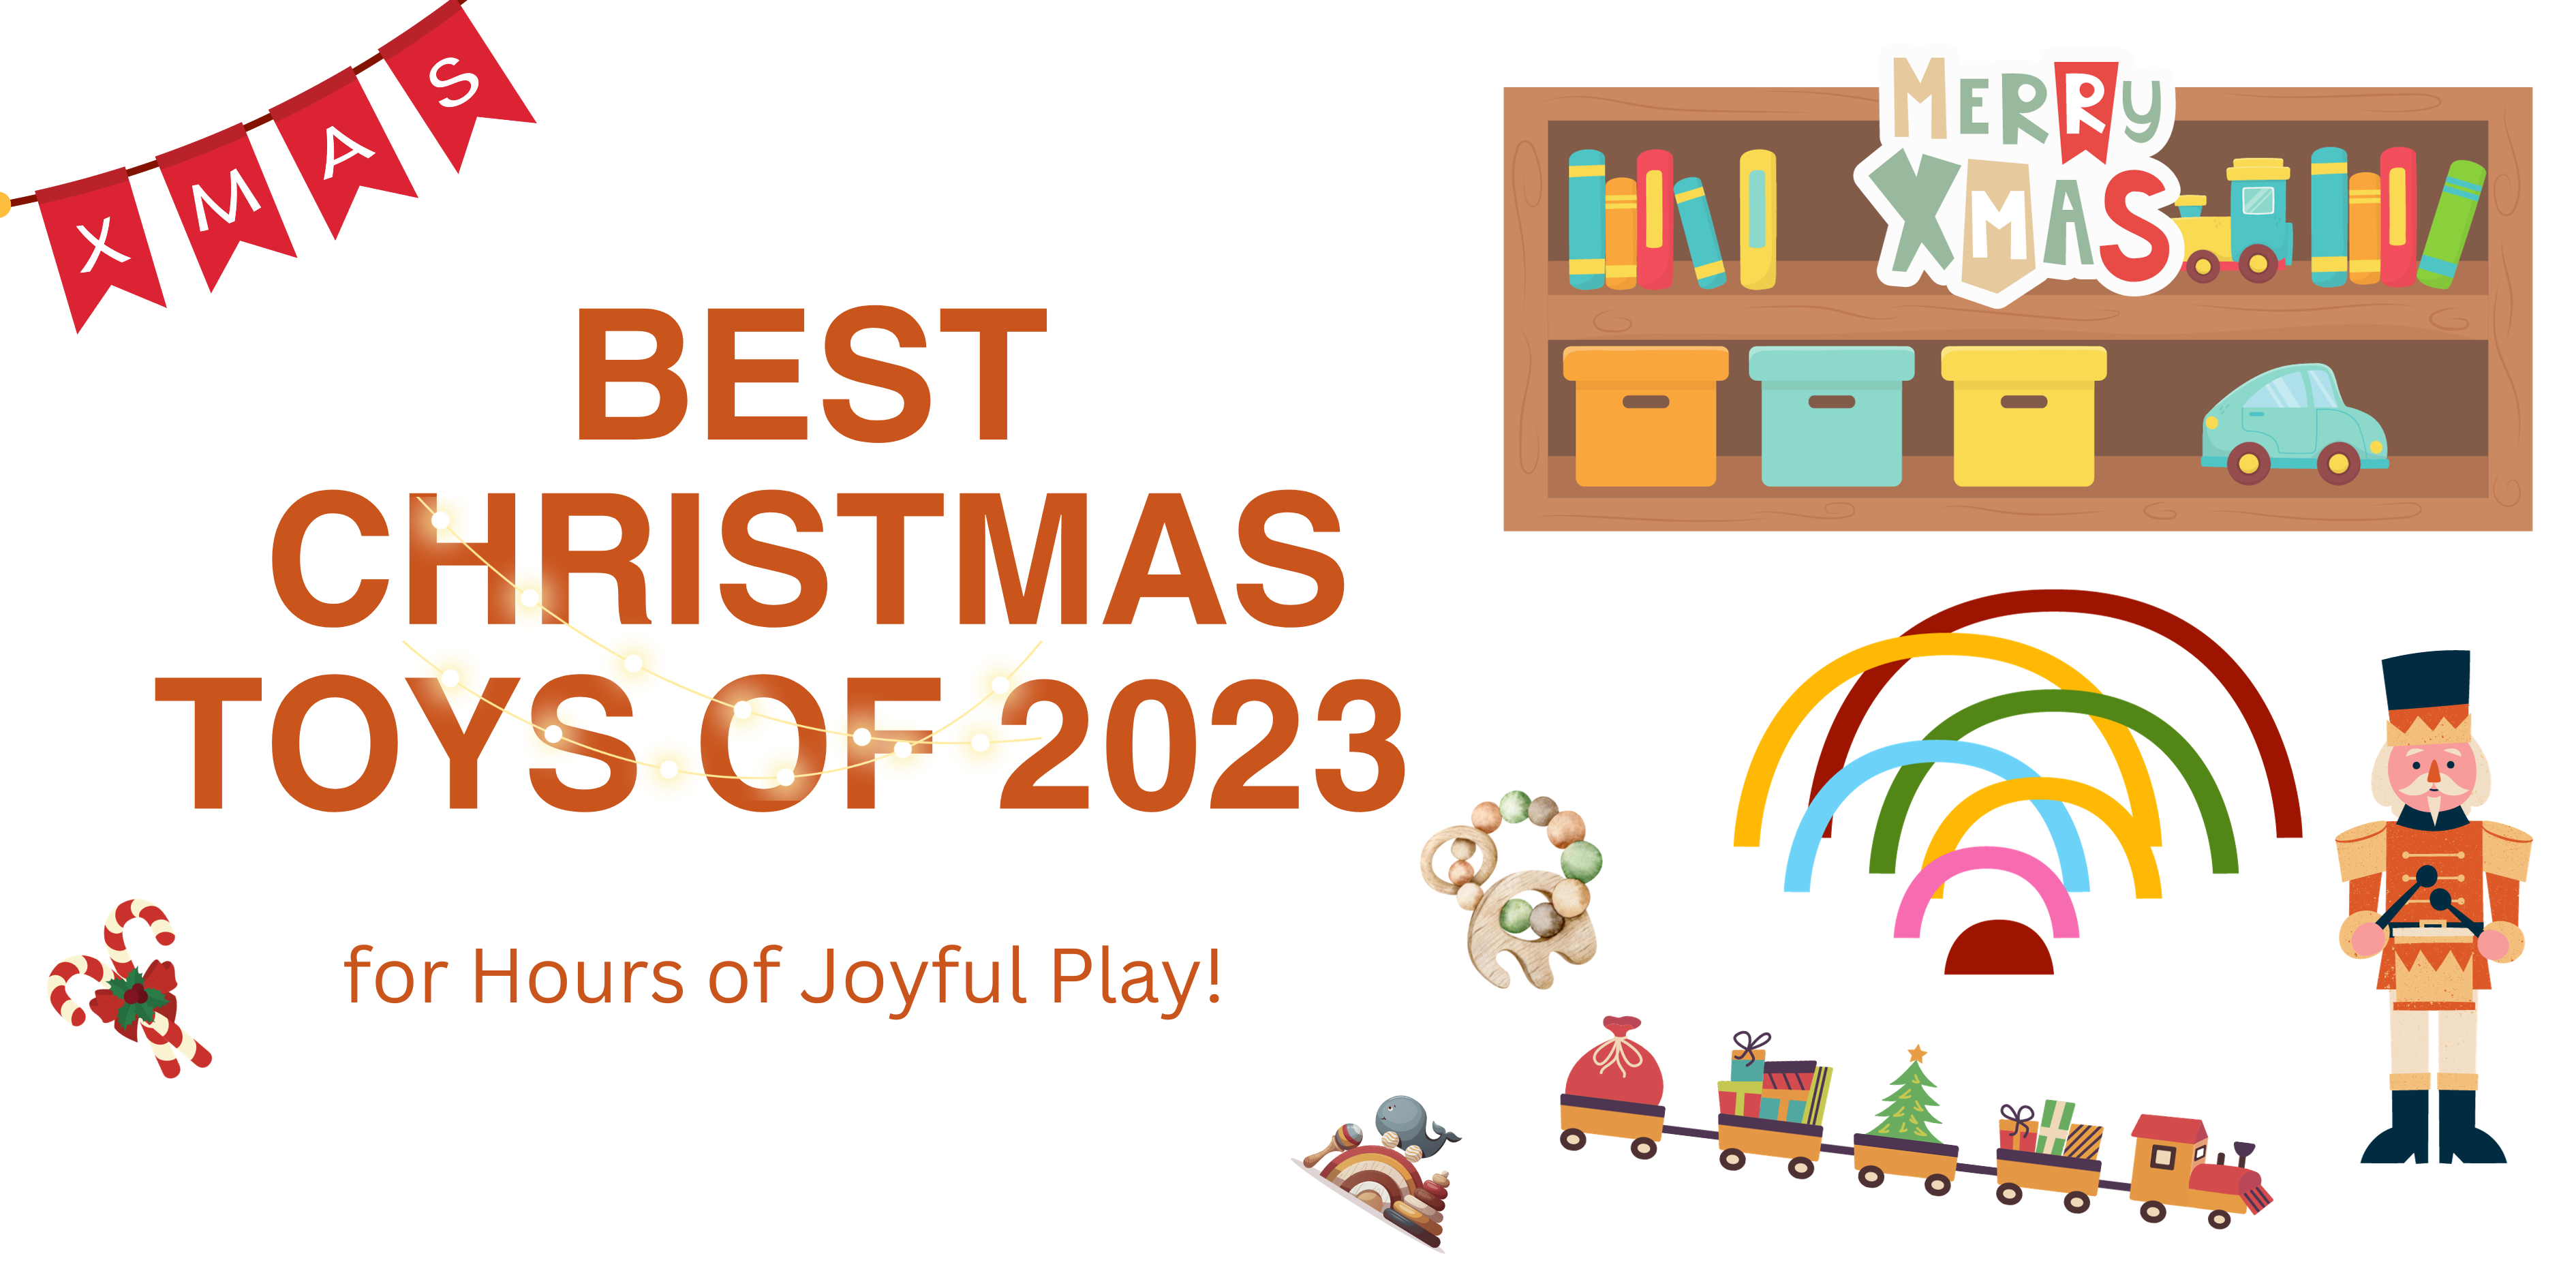 Best Christmas Toys of 2023: A Season of Joyful Play!